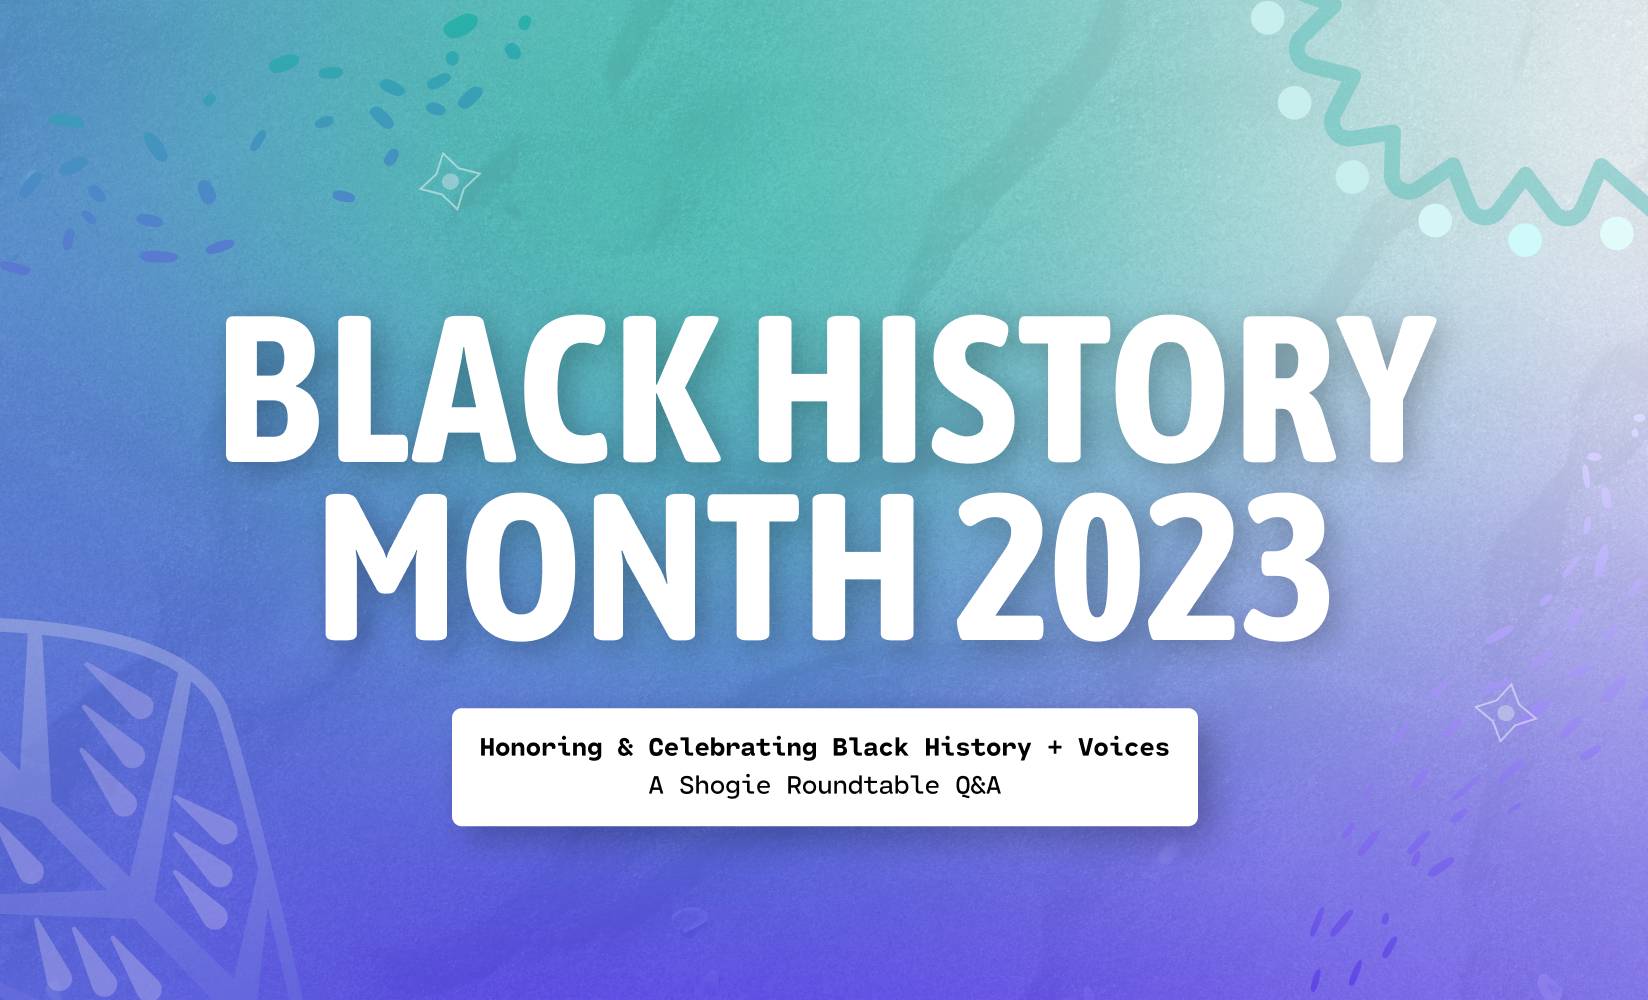 Celebrating and Honoring Black History Month at Shogun v2